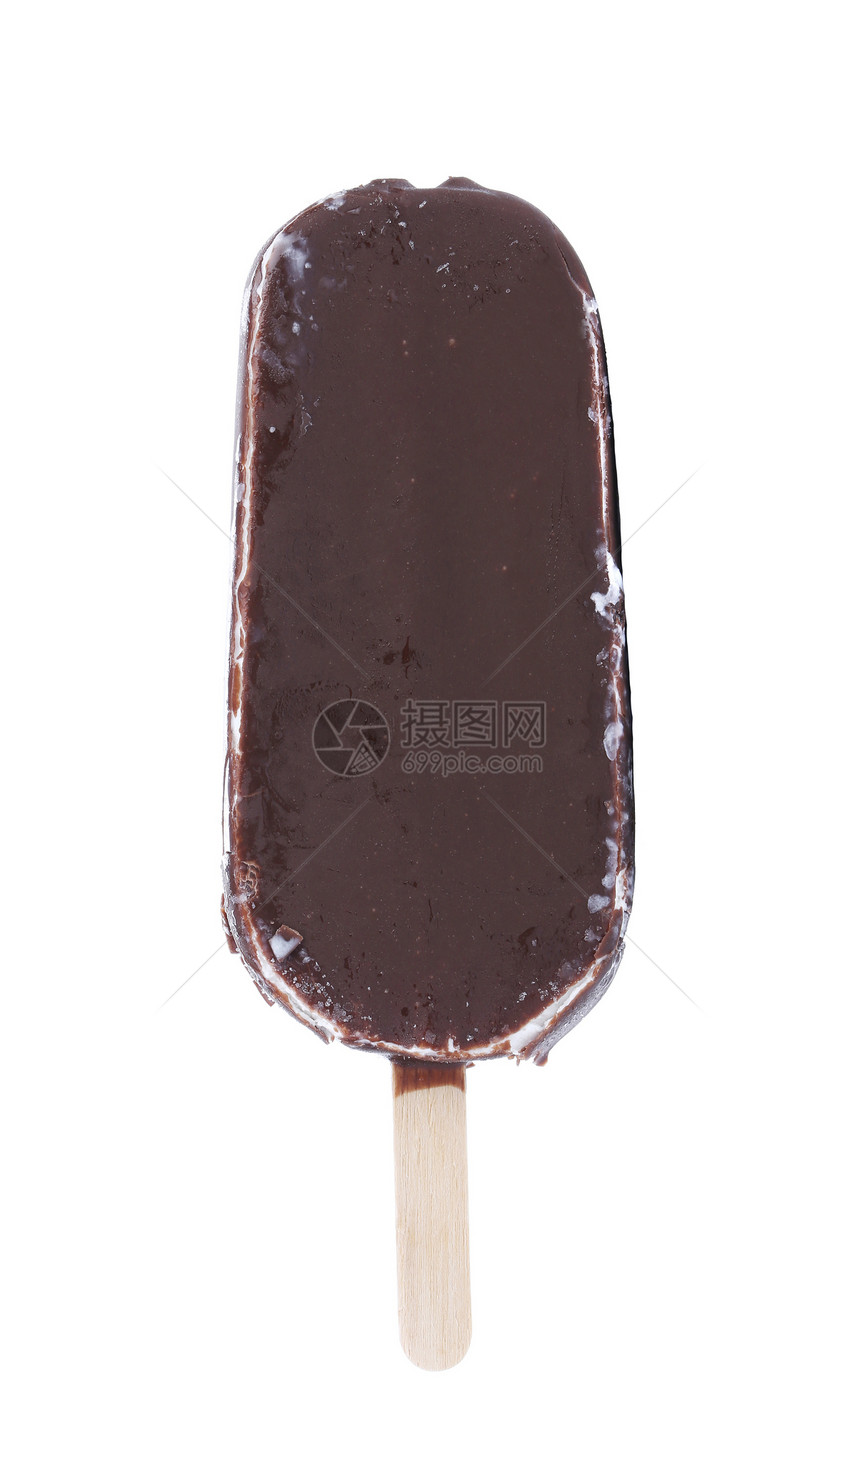 一根巧克力香草冰淇淋加在棍子上涂层糖霜塞子食物甜点部分调味品工业奶油白色图片